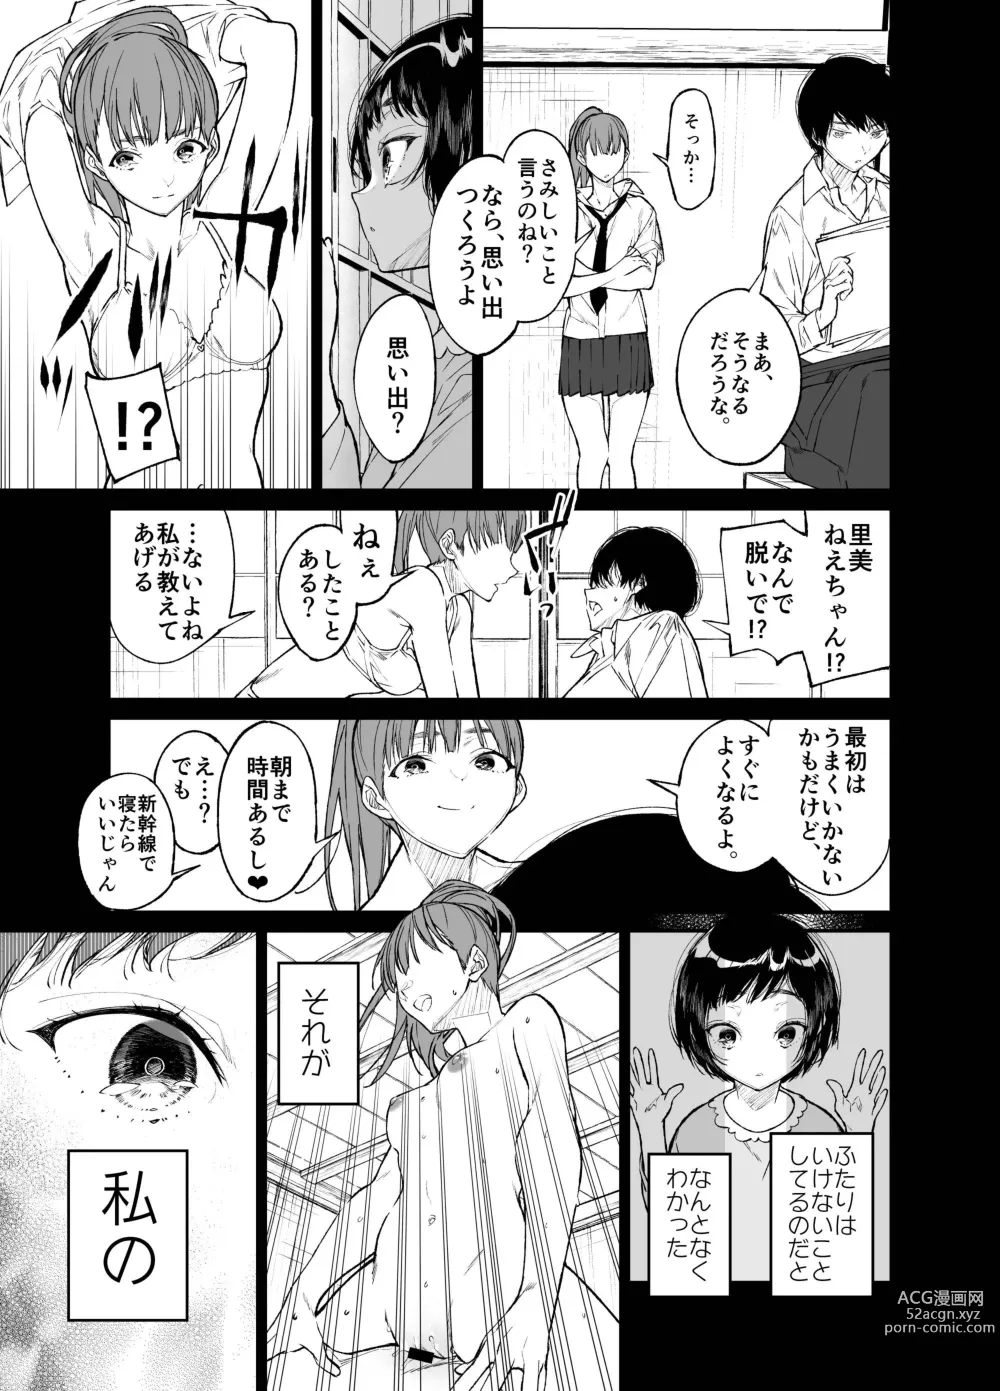 Page 13 of doujinshi Natsu, Shoujo wa Tonde, Hi ni Iru.